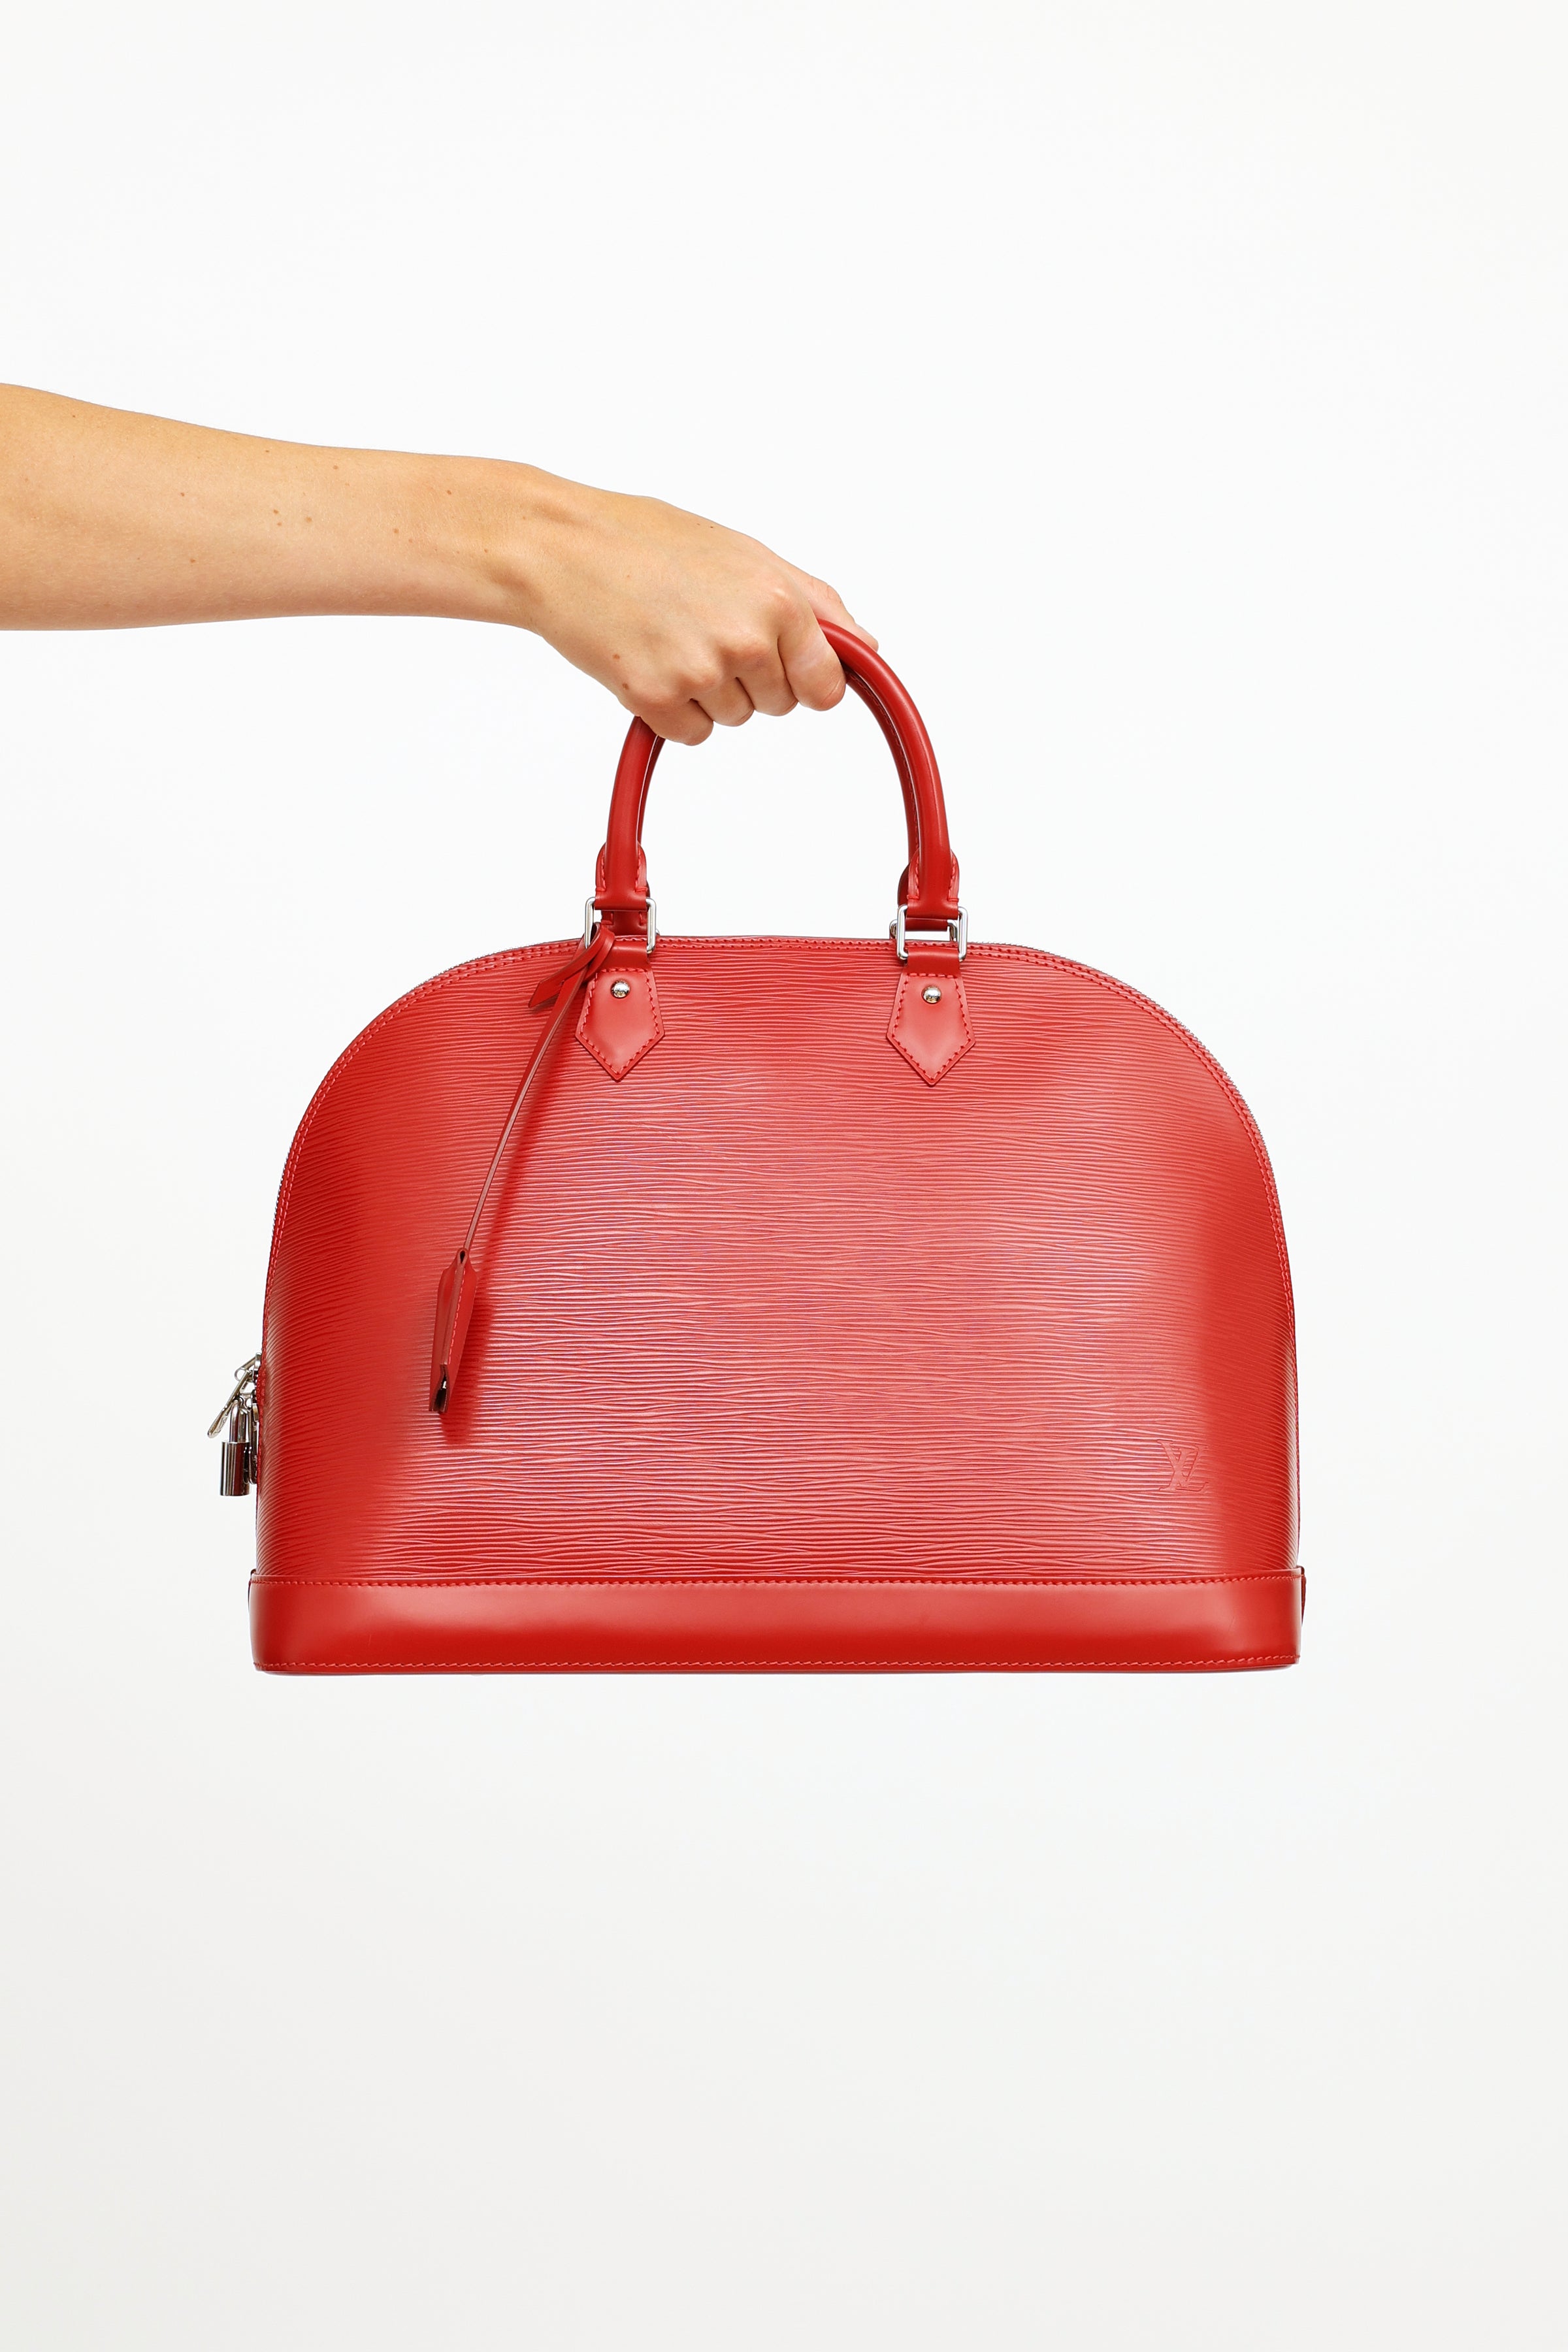 Louis Vuitton Red Epi Leather Alma Bag